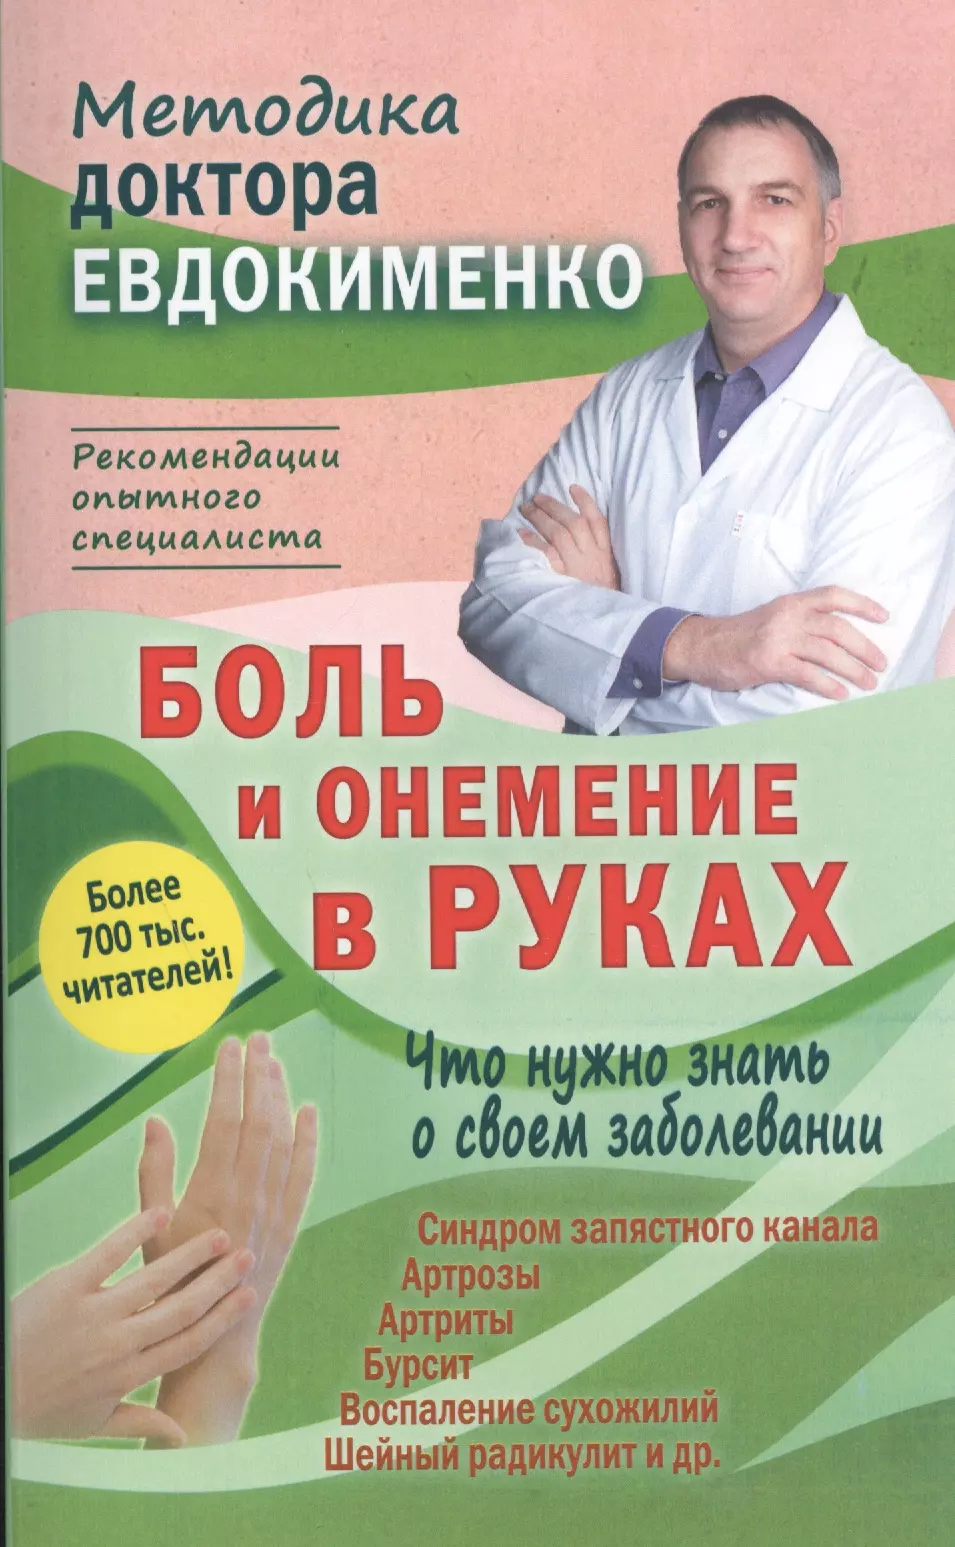 Евдокименко Павел Валериевич Боль и онемение в руках. Что нужно знать о своем заболевании. 2-е издание